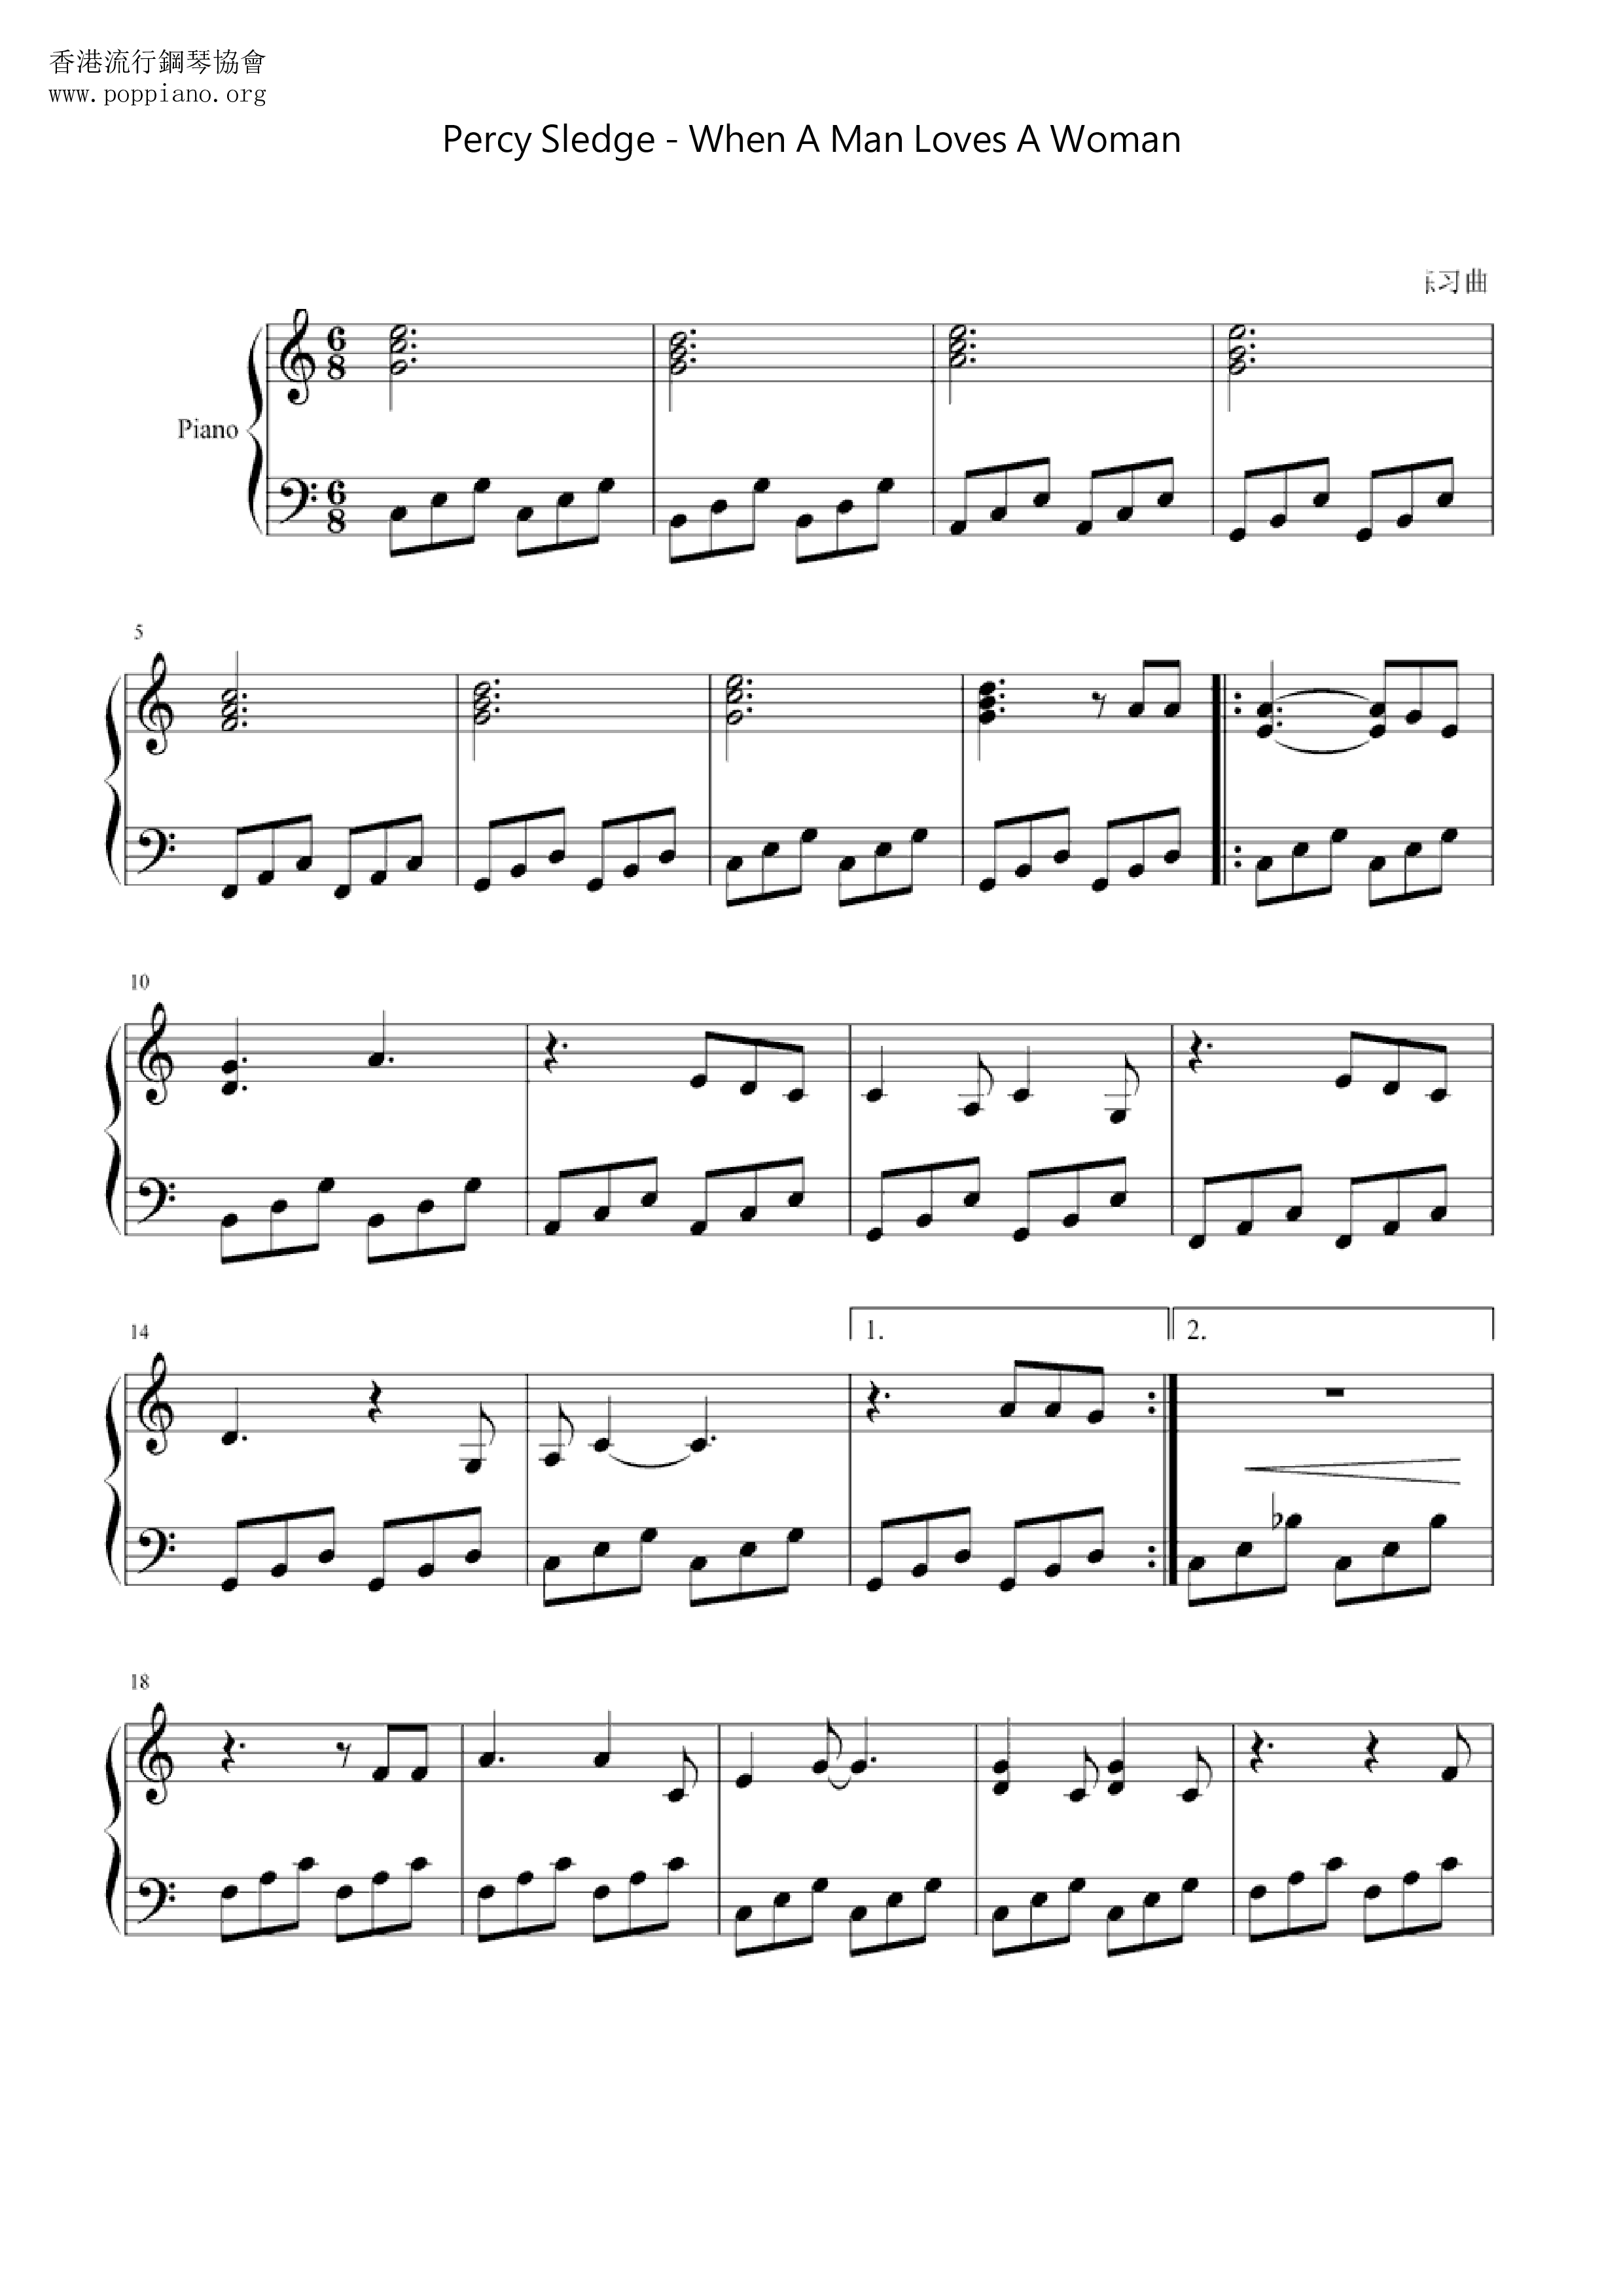 Percy Sledge When A Man Loves A Woman Sheet Music Pdf Free Score Download